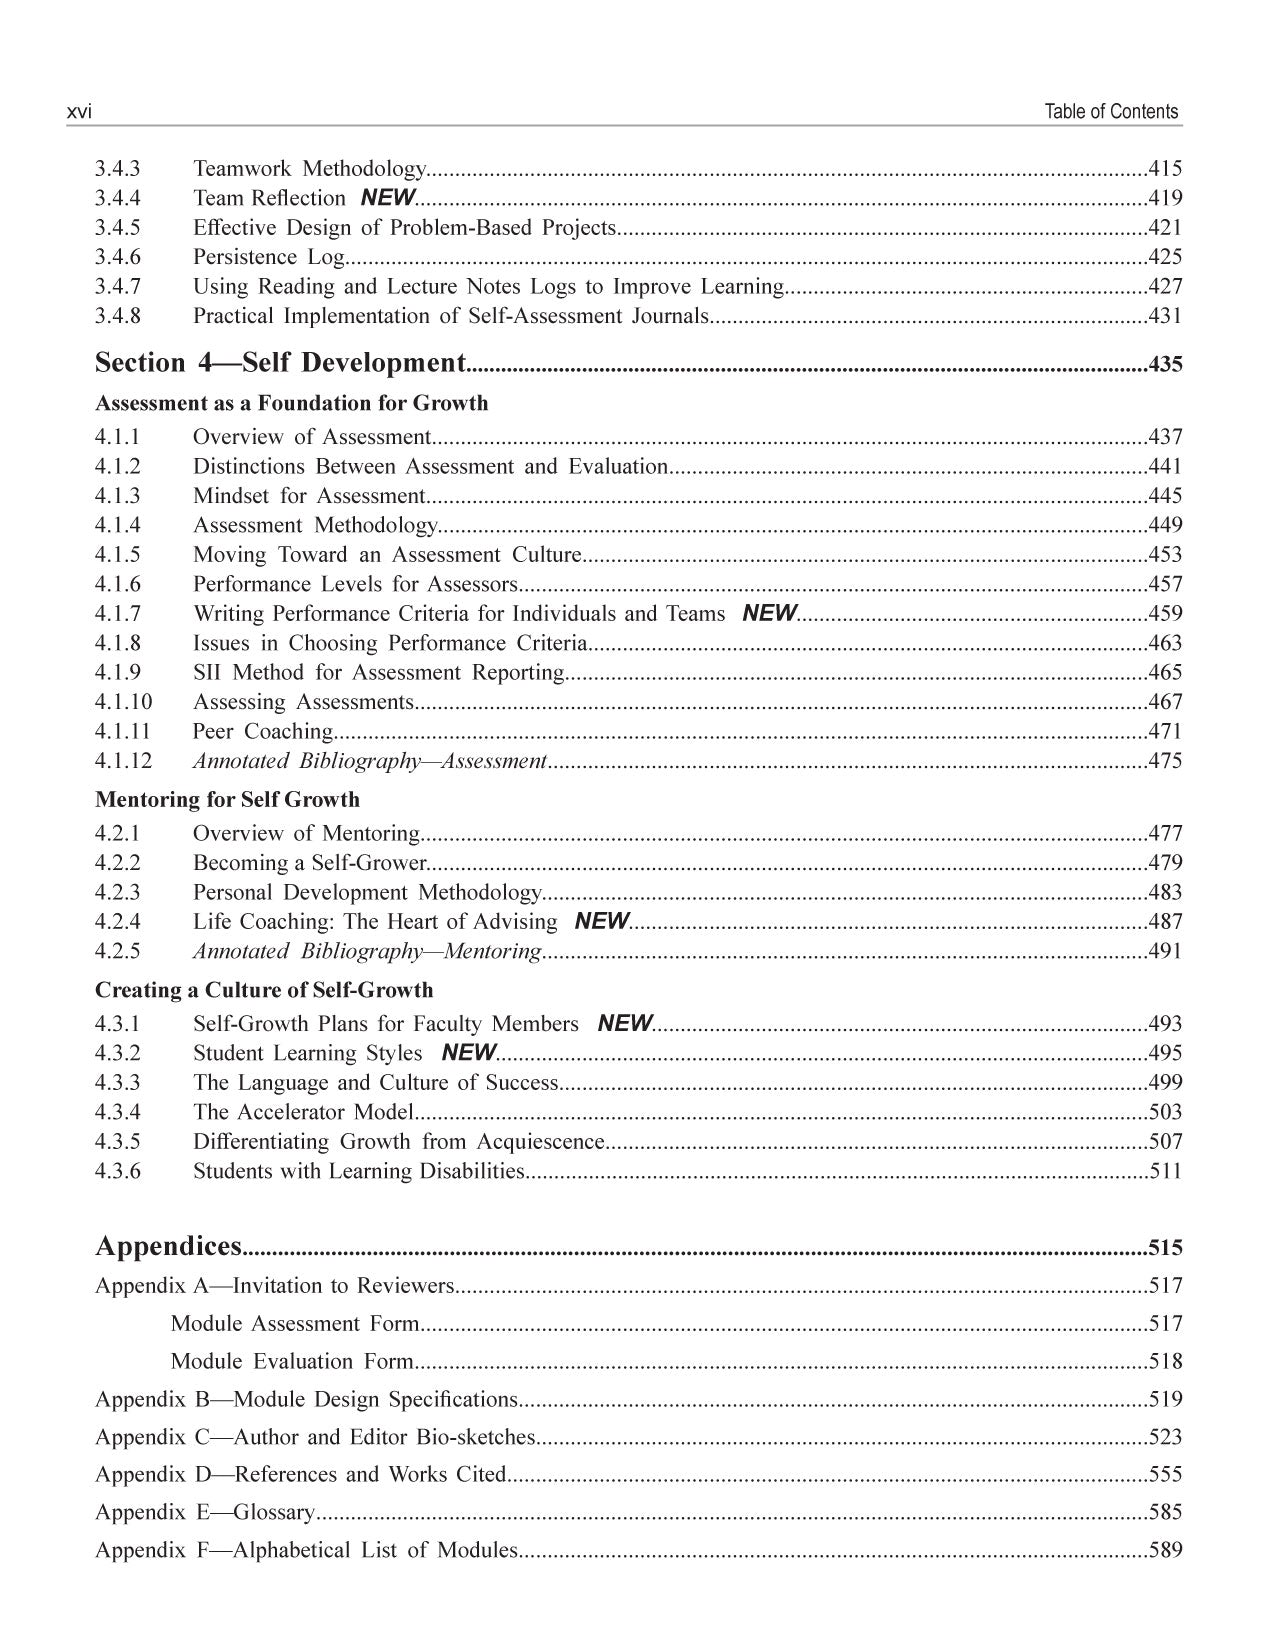 Faculty Guidebook Bundle, 4th Edition